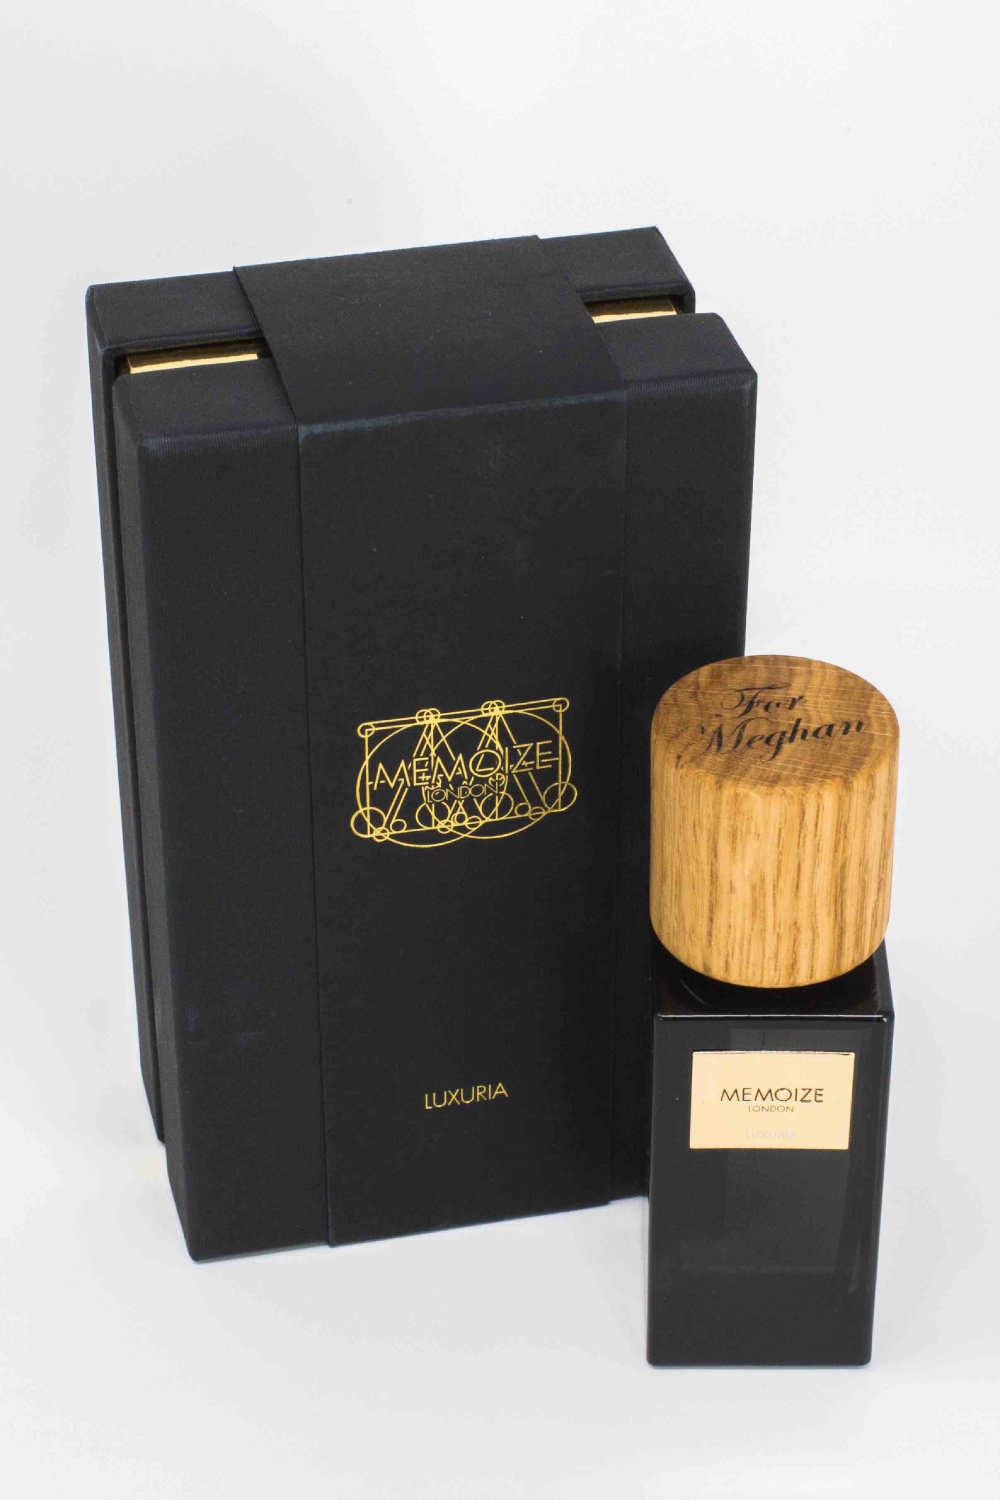 Solid oak designs | Memoize Luxury Perfume